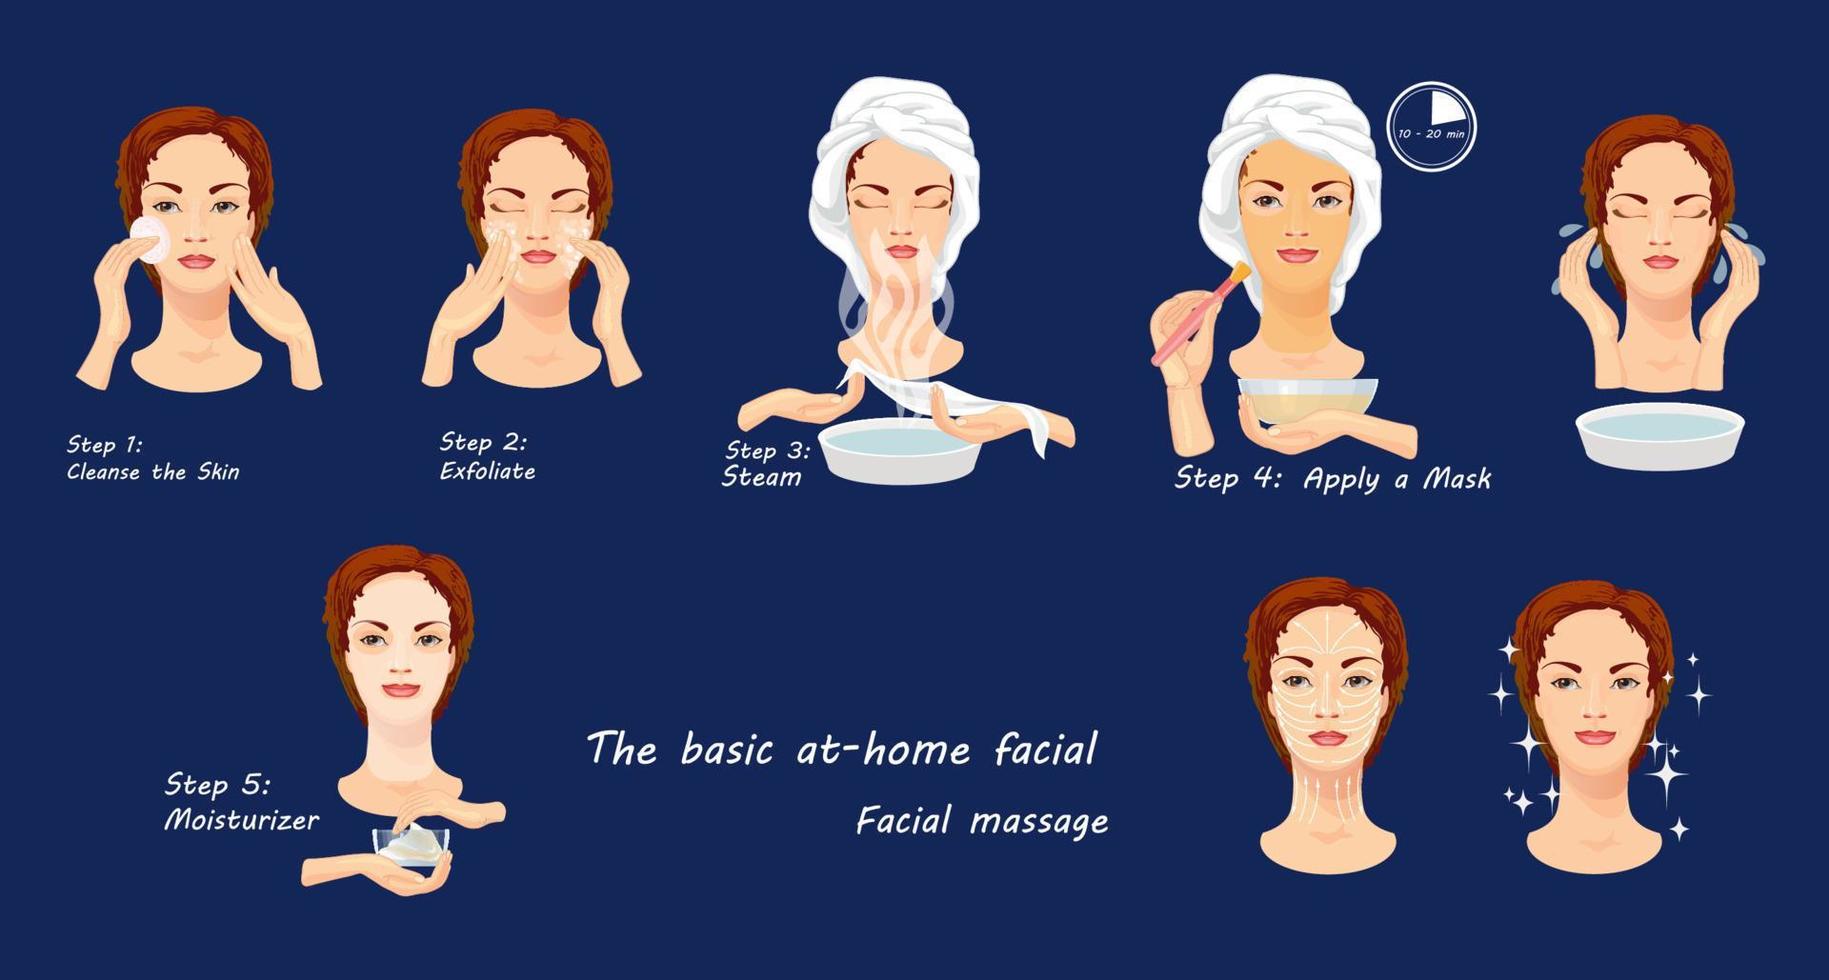 Beauty-Gesichtsverfahren. Infografik. Spa-Gesichtspflege. vektor isolierte illustration.